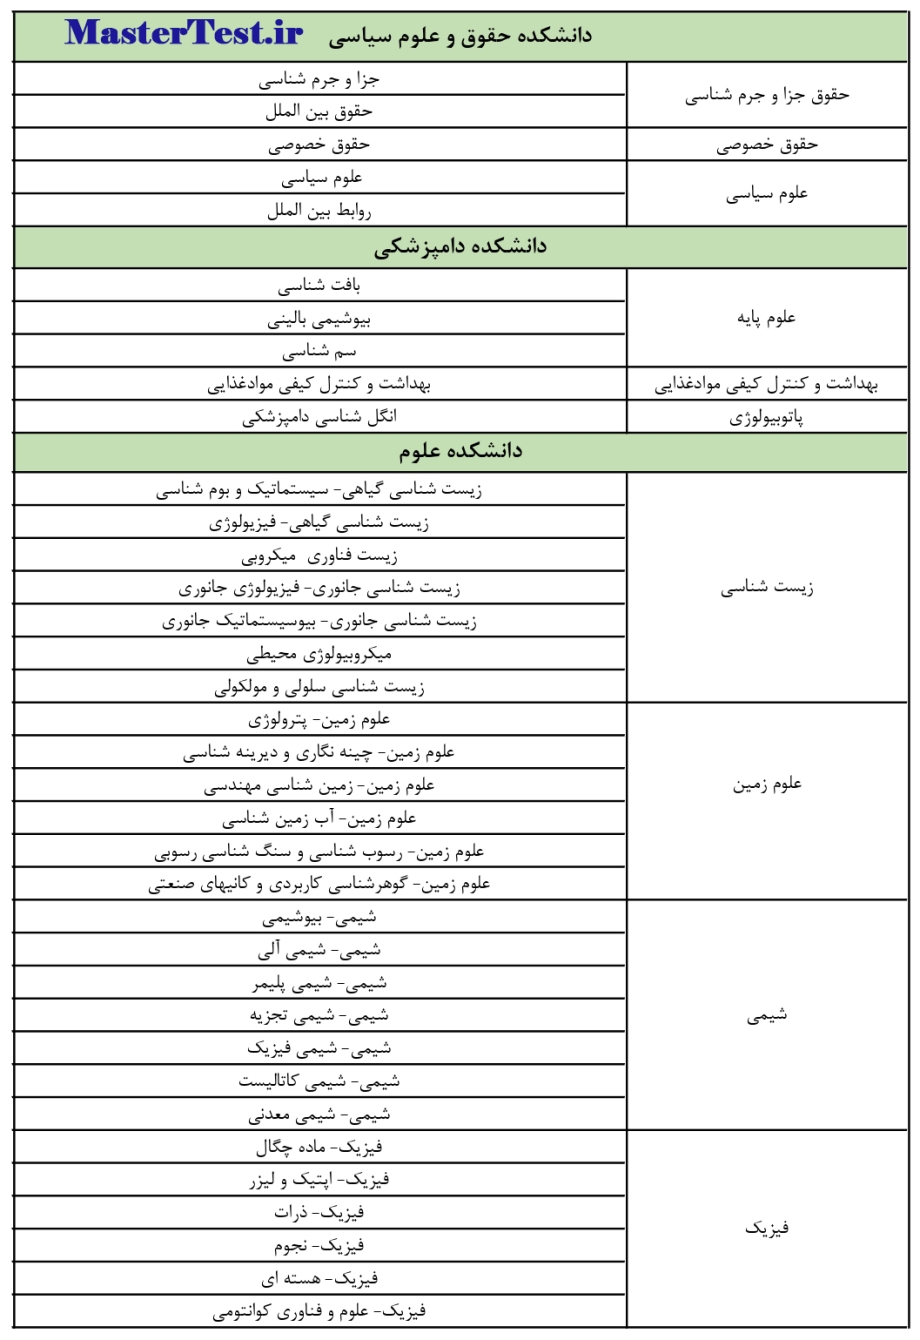 رشته های کارشناسی ارشد بدون آزمون دانشگاه فردوسی مشهد صفحه 2